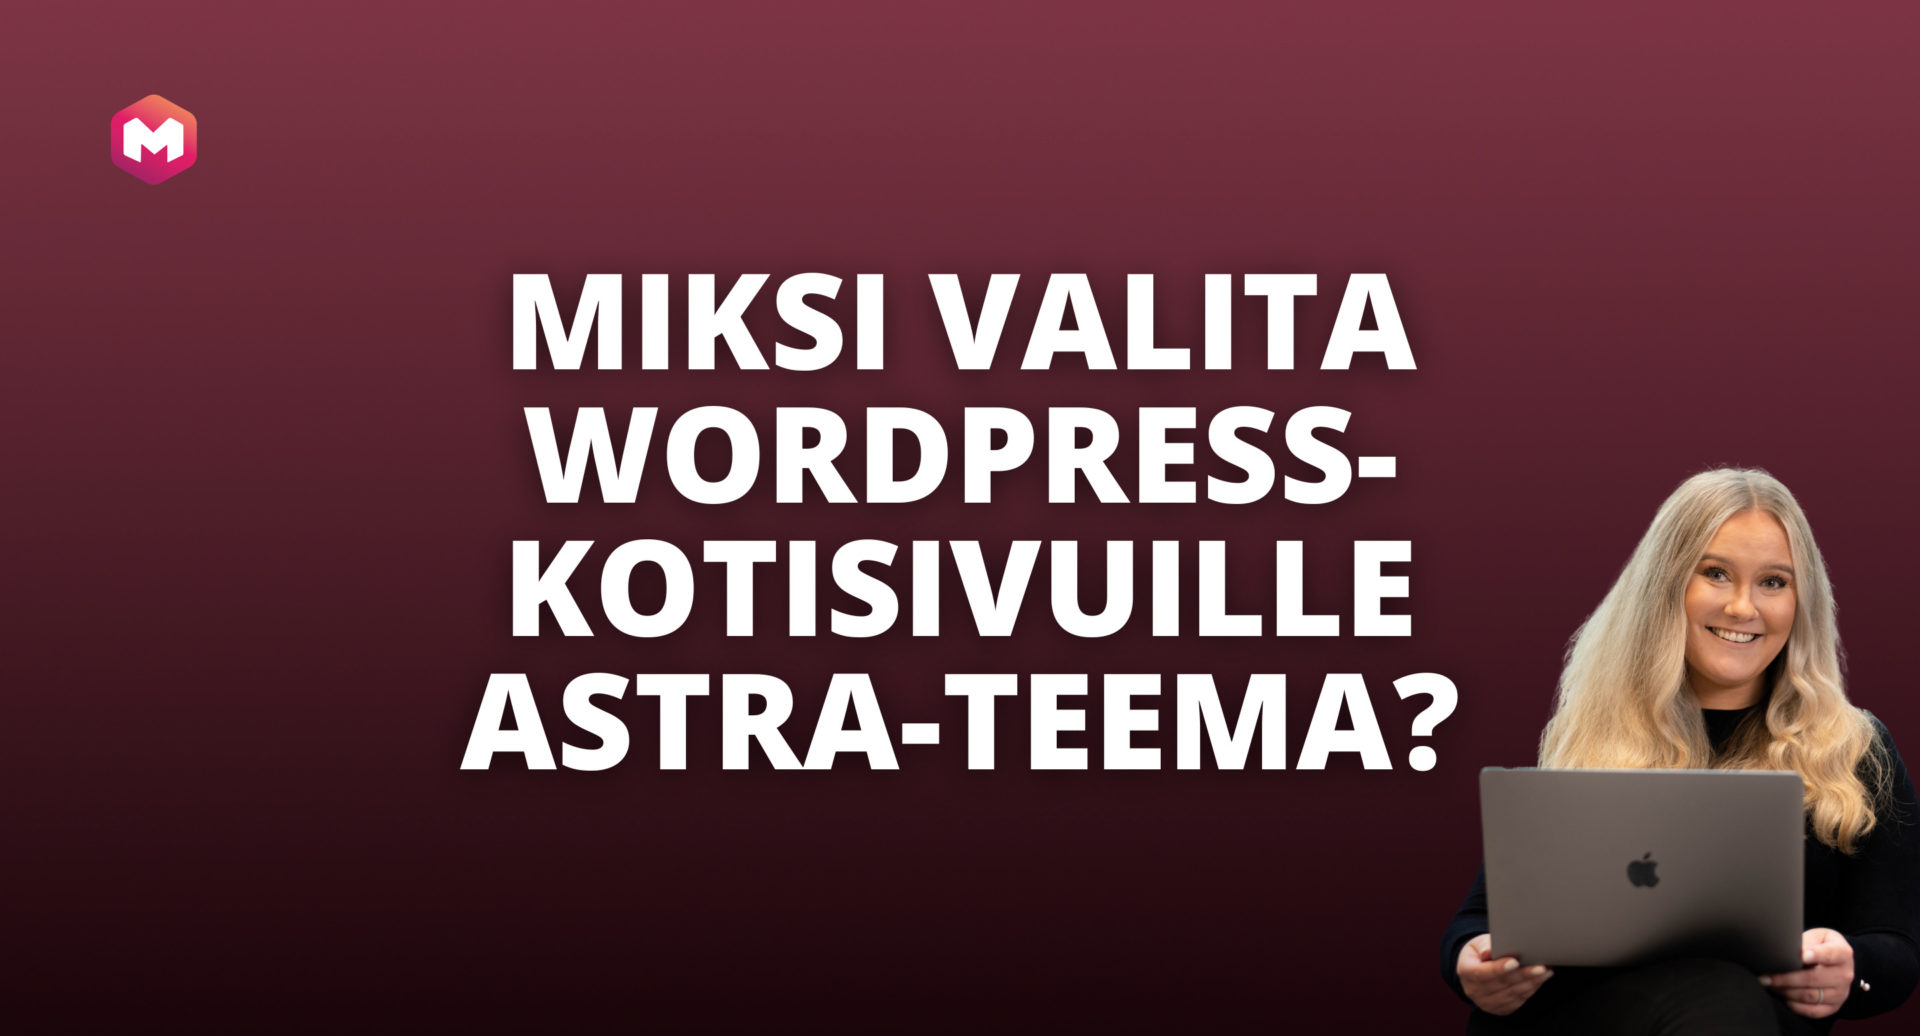 Miksi valita WordPress-kotisivuille Astra-teema?